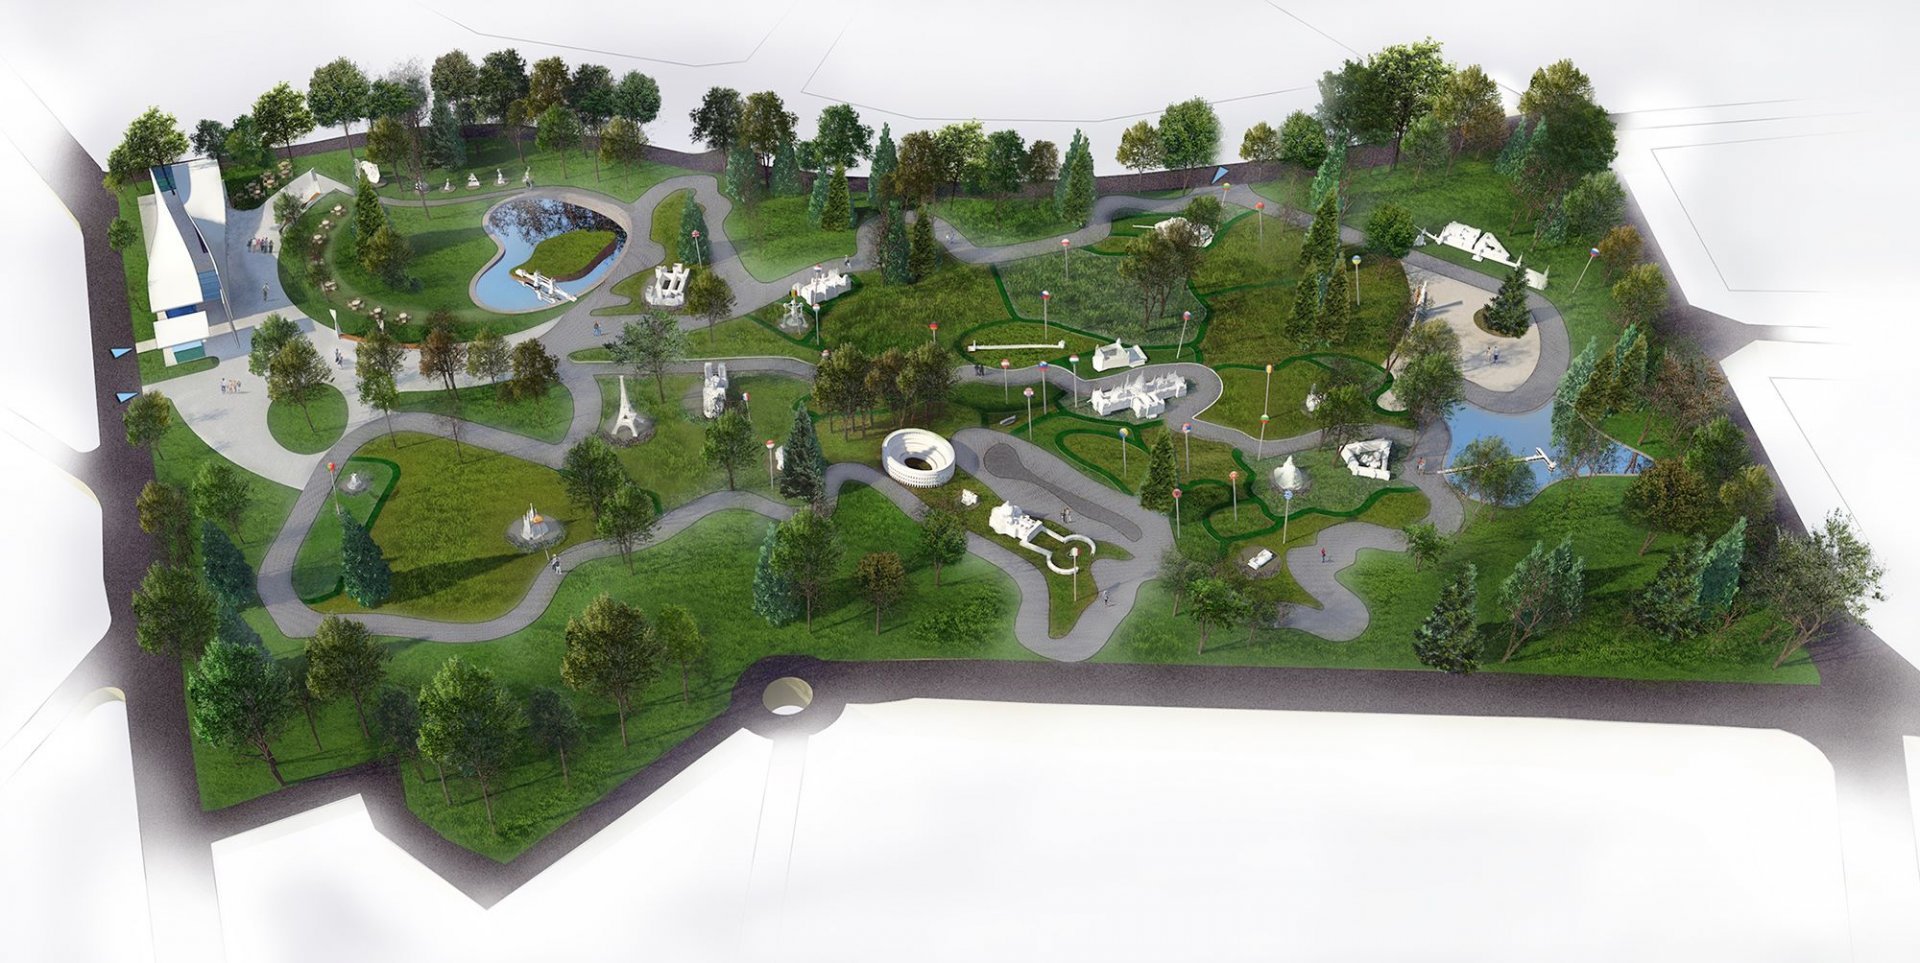 Тази визия на парка бе представена за обсъждания и критики през янауари 2019 година